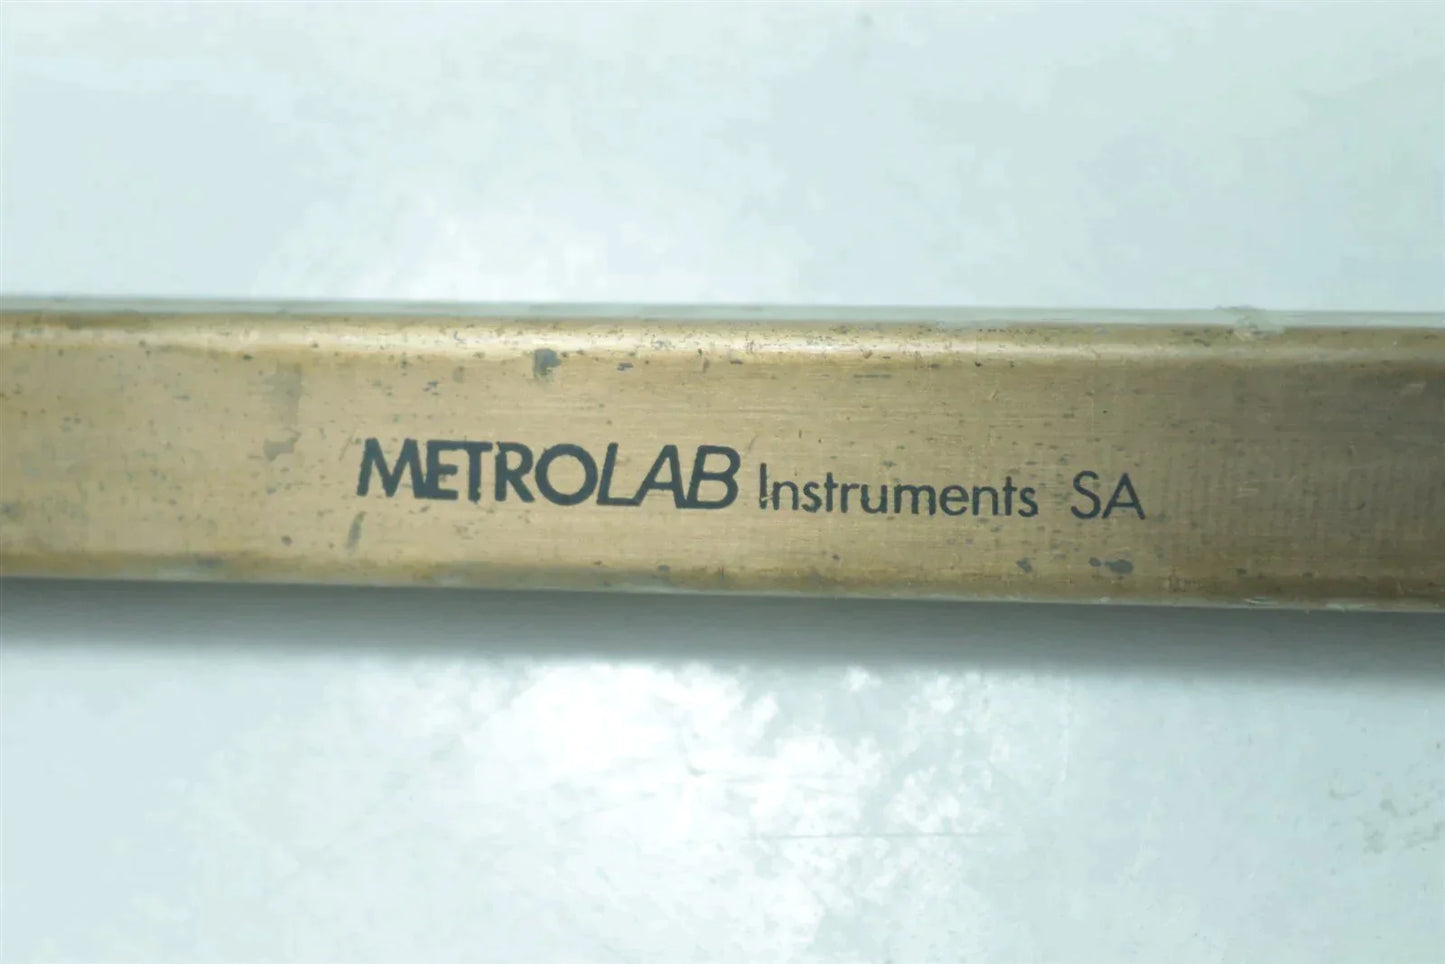 MetroLab Precision NMR Teslameter PT 2025 + Probe Tested Working!